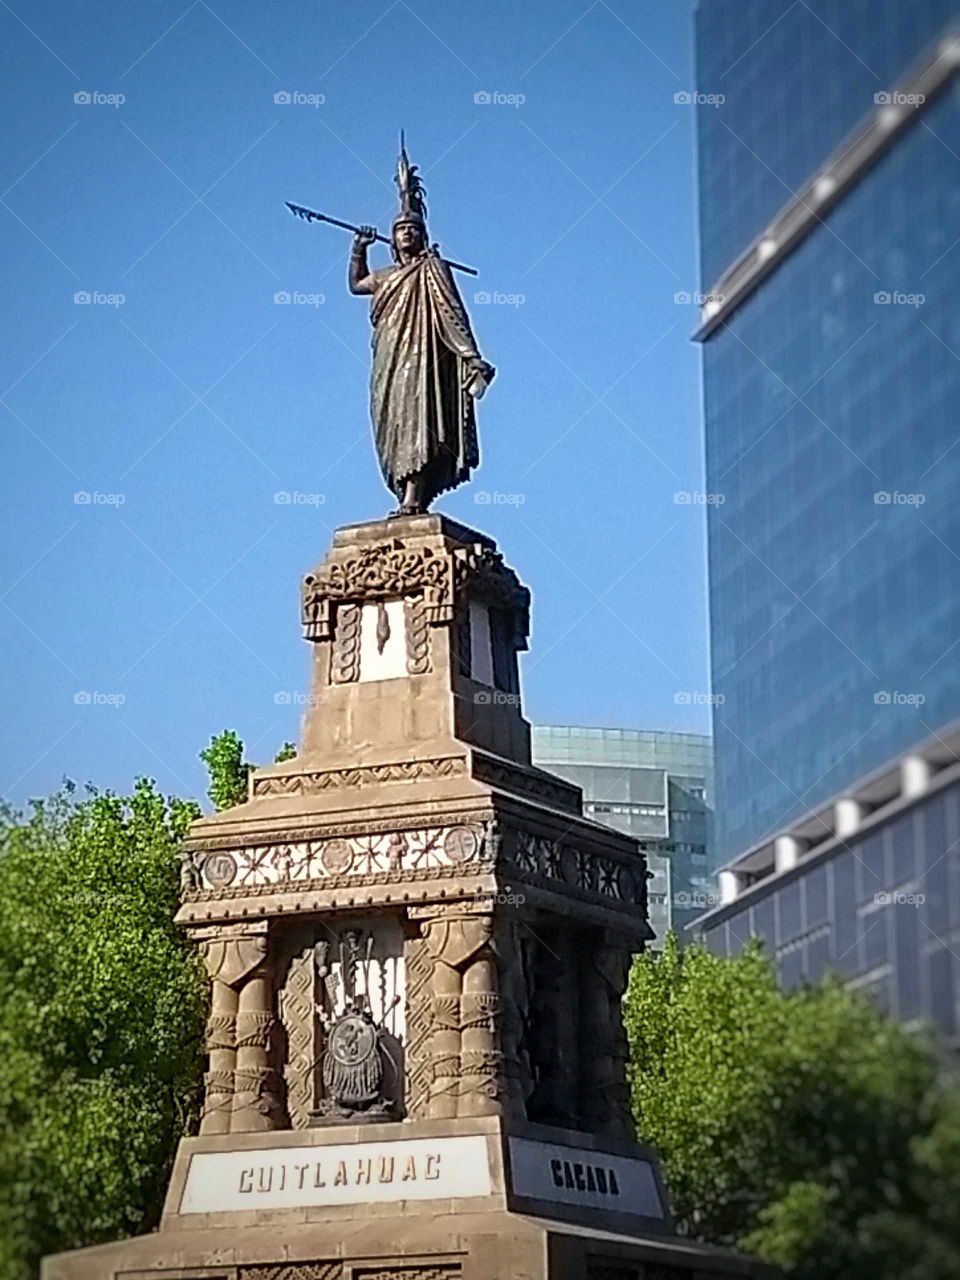 Esta foto fue tomada en la avenida reforma hacia la estatua de cuitláhuac está retocada para obtener un mejor resultado.
La foto fue tomada ncon un celular Motorola G5.